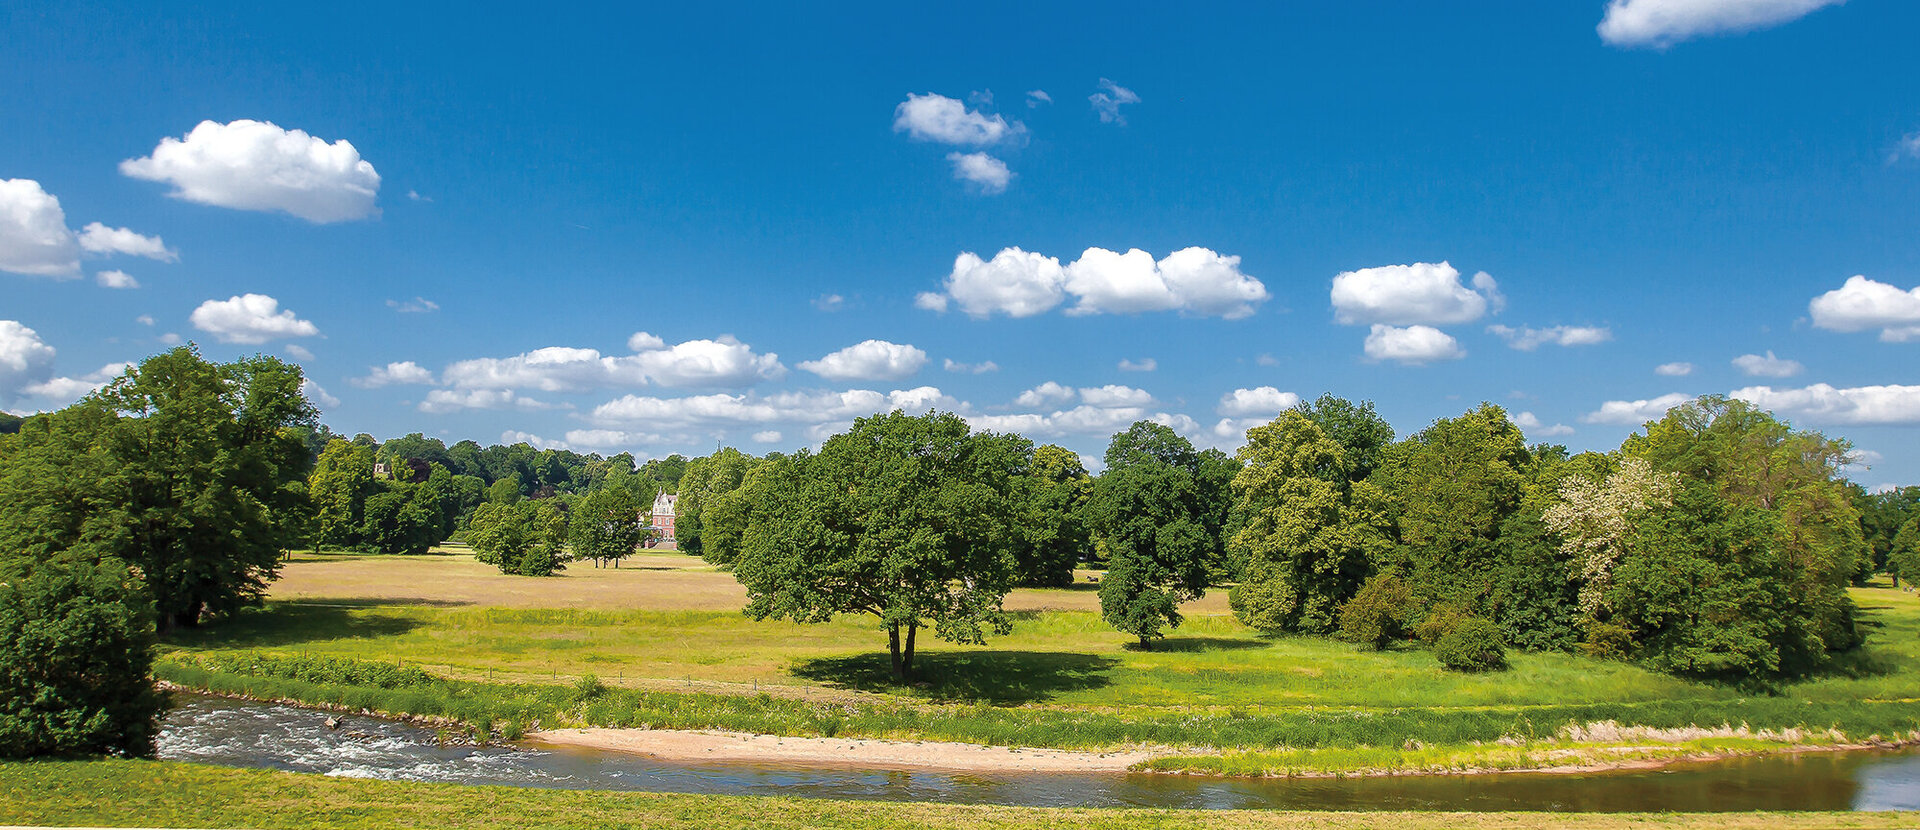 Muskauerův park/ Park Mużakowski zapsaný na seznamu světového dědictví UNESCO Zažijte velké dědictví